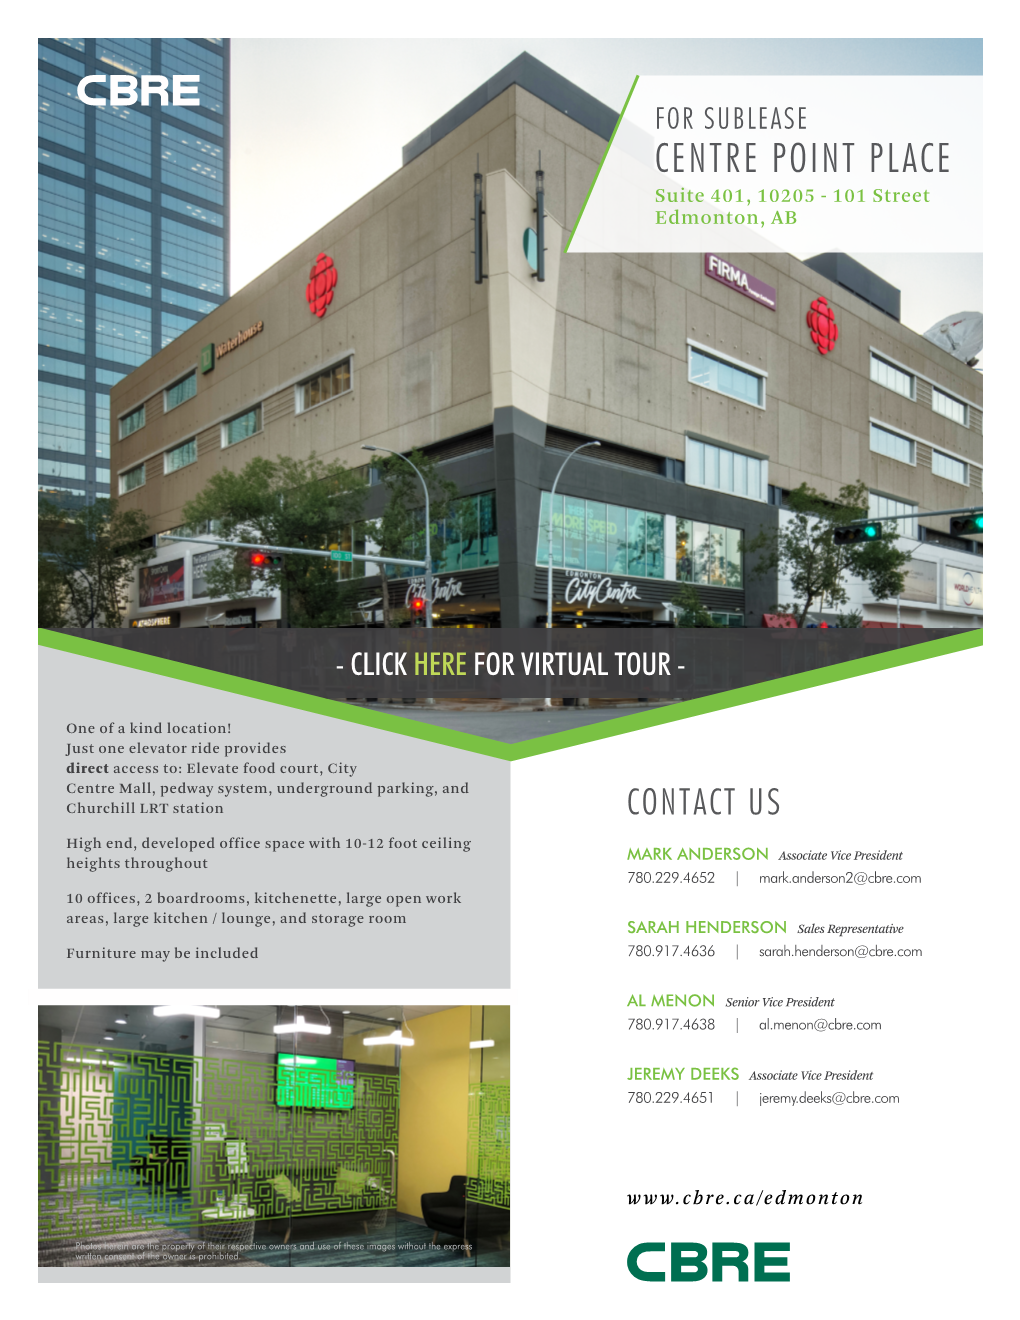 FOR SUBLEASE CENTRE POINT PLACE Suite 401, 10205 - 101 Street Edmonton, AB